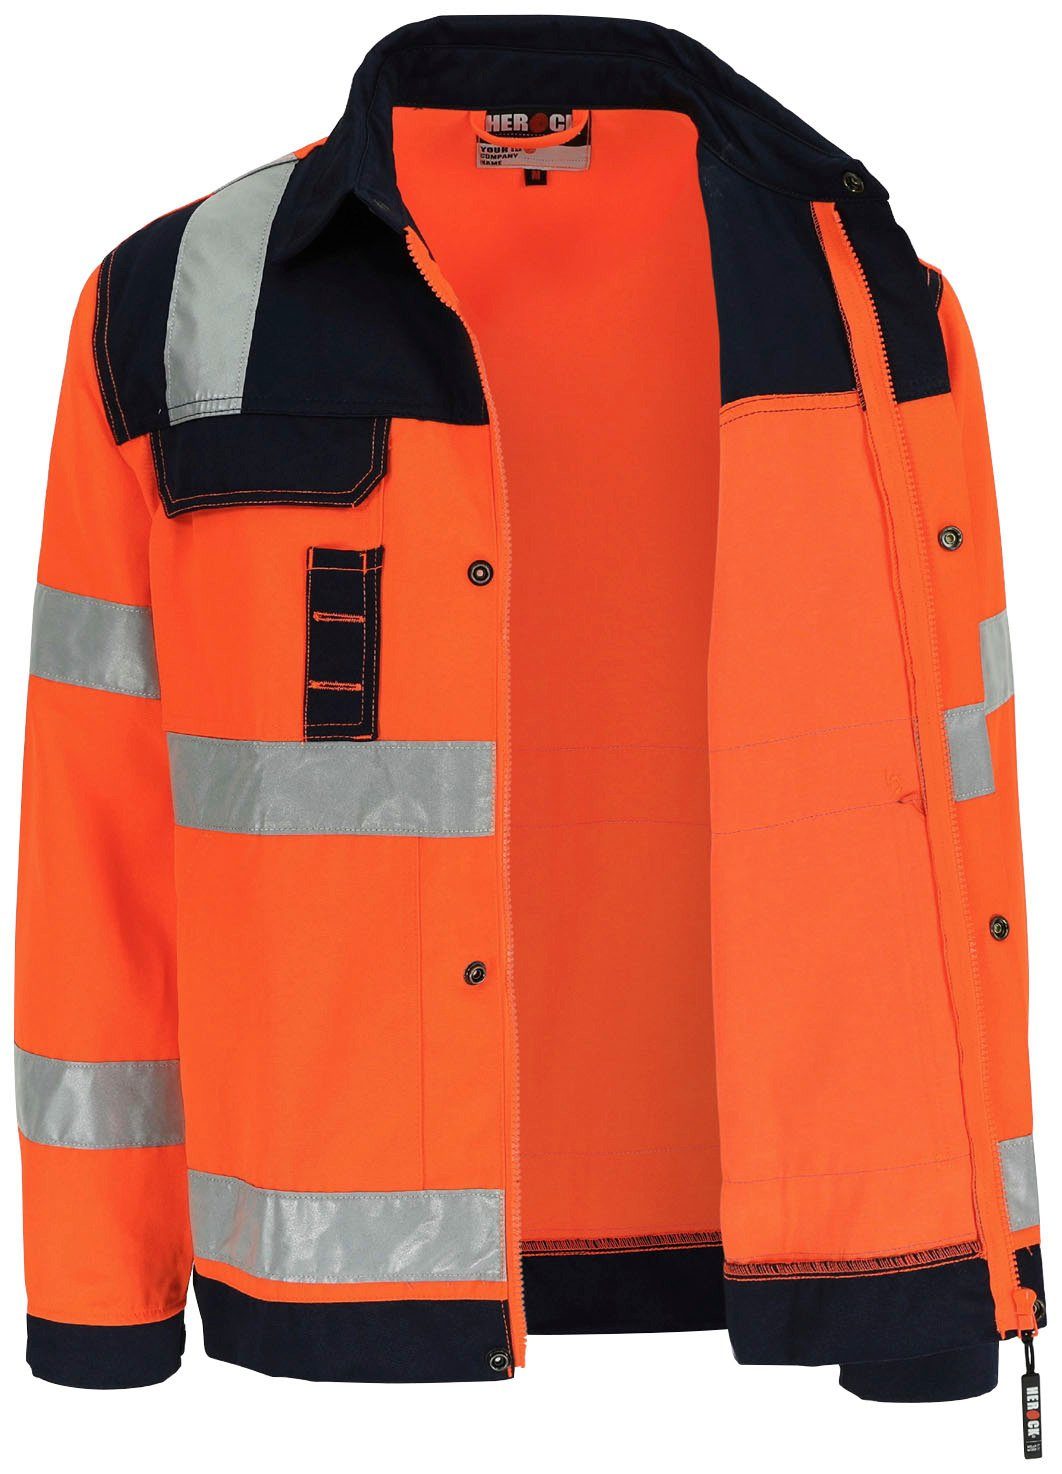 Herock Arbeitsjacke reflektierende Taschen, 5 Bündchen, eintellbare Hydros Bänder Hochsichtbar orange 5cm Hochwertig, Jacke